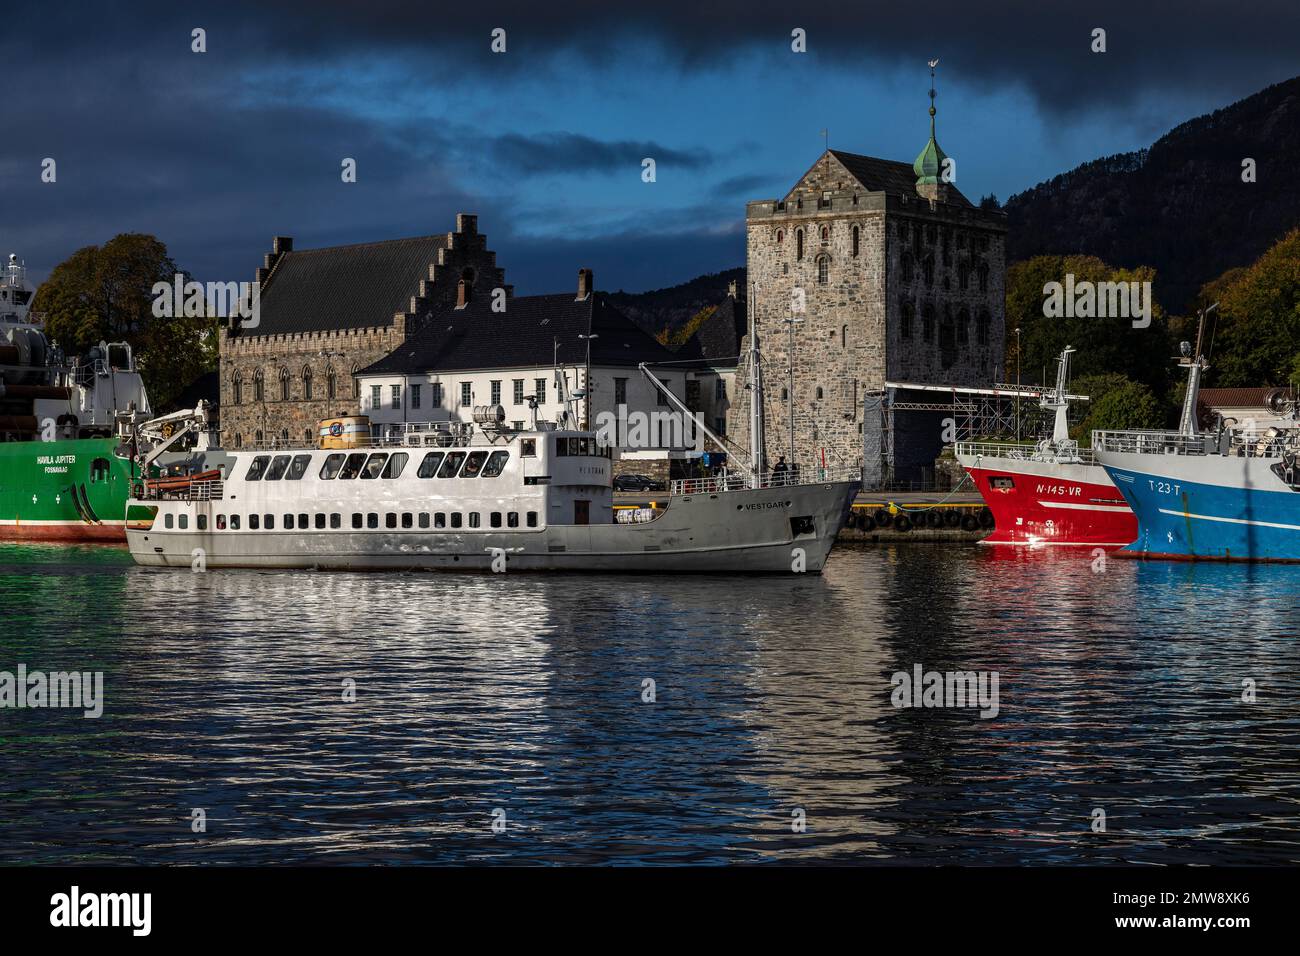 Veteran passenger vessel Vestgar, built 1957. Arriving in the port of Bergen, Norway. Ancient Haakons Hall and Rosenkrantz Tower in background. Stock Photo